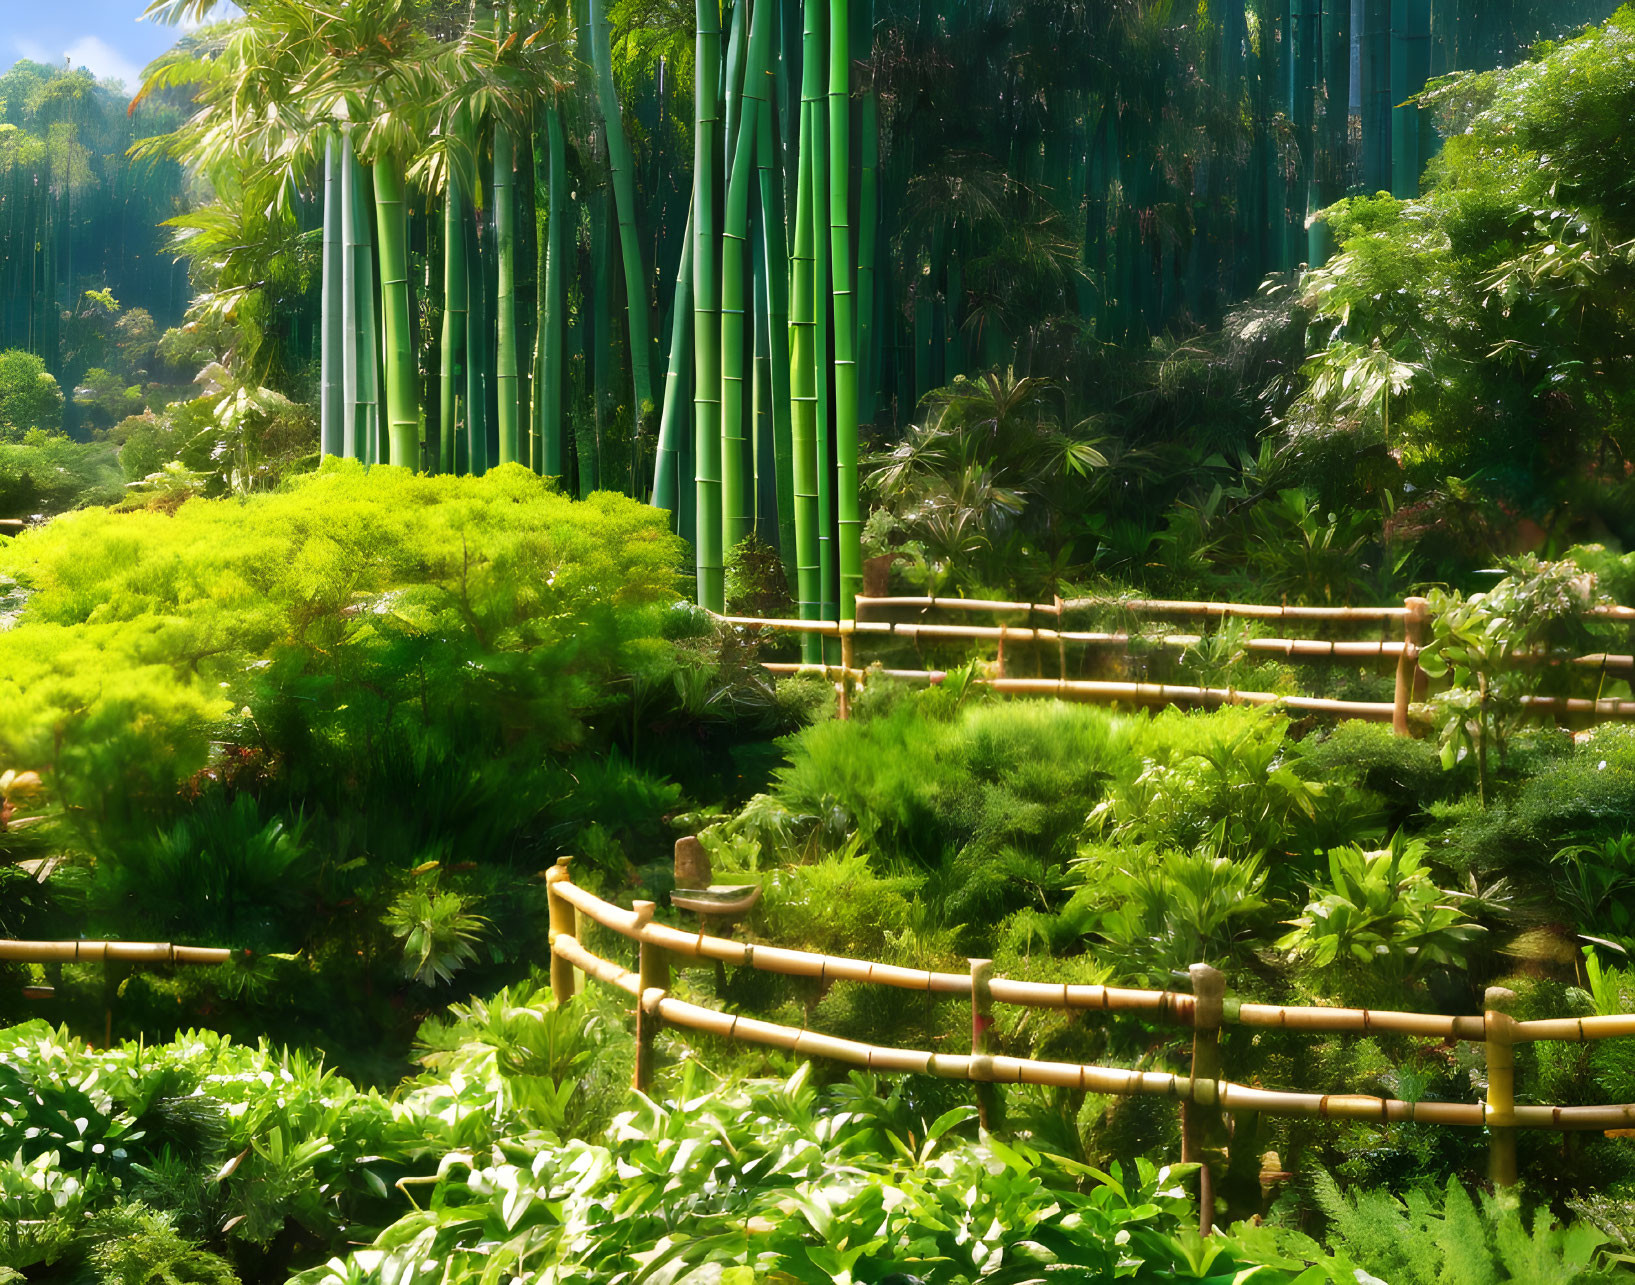 Bamboo garden 